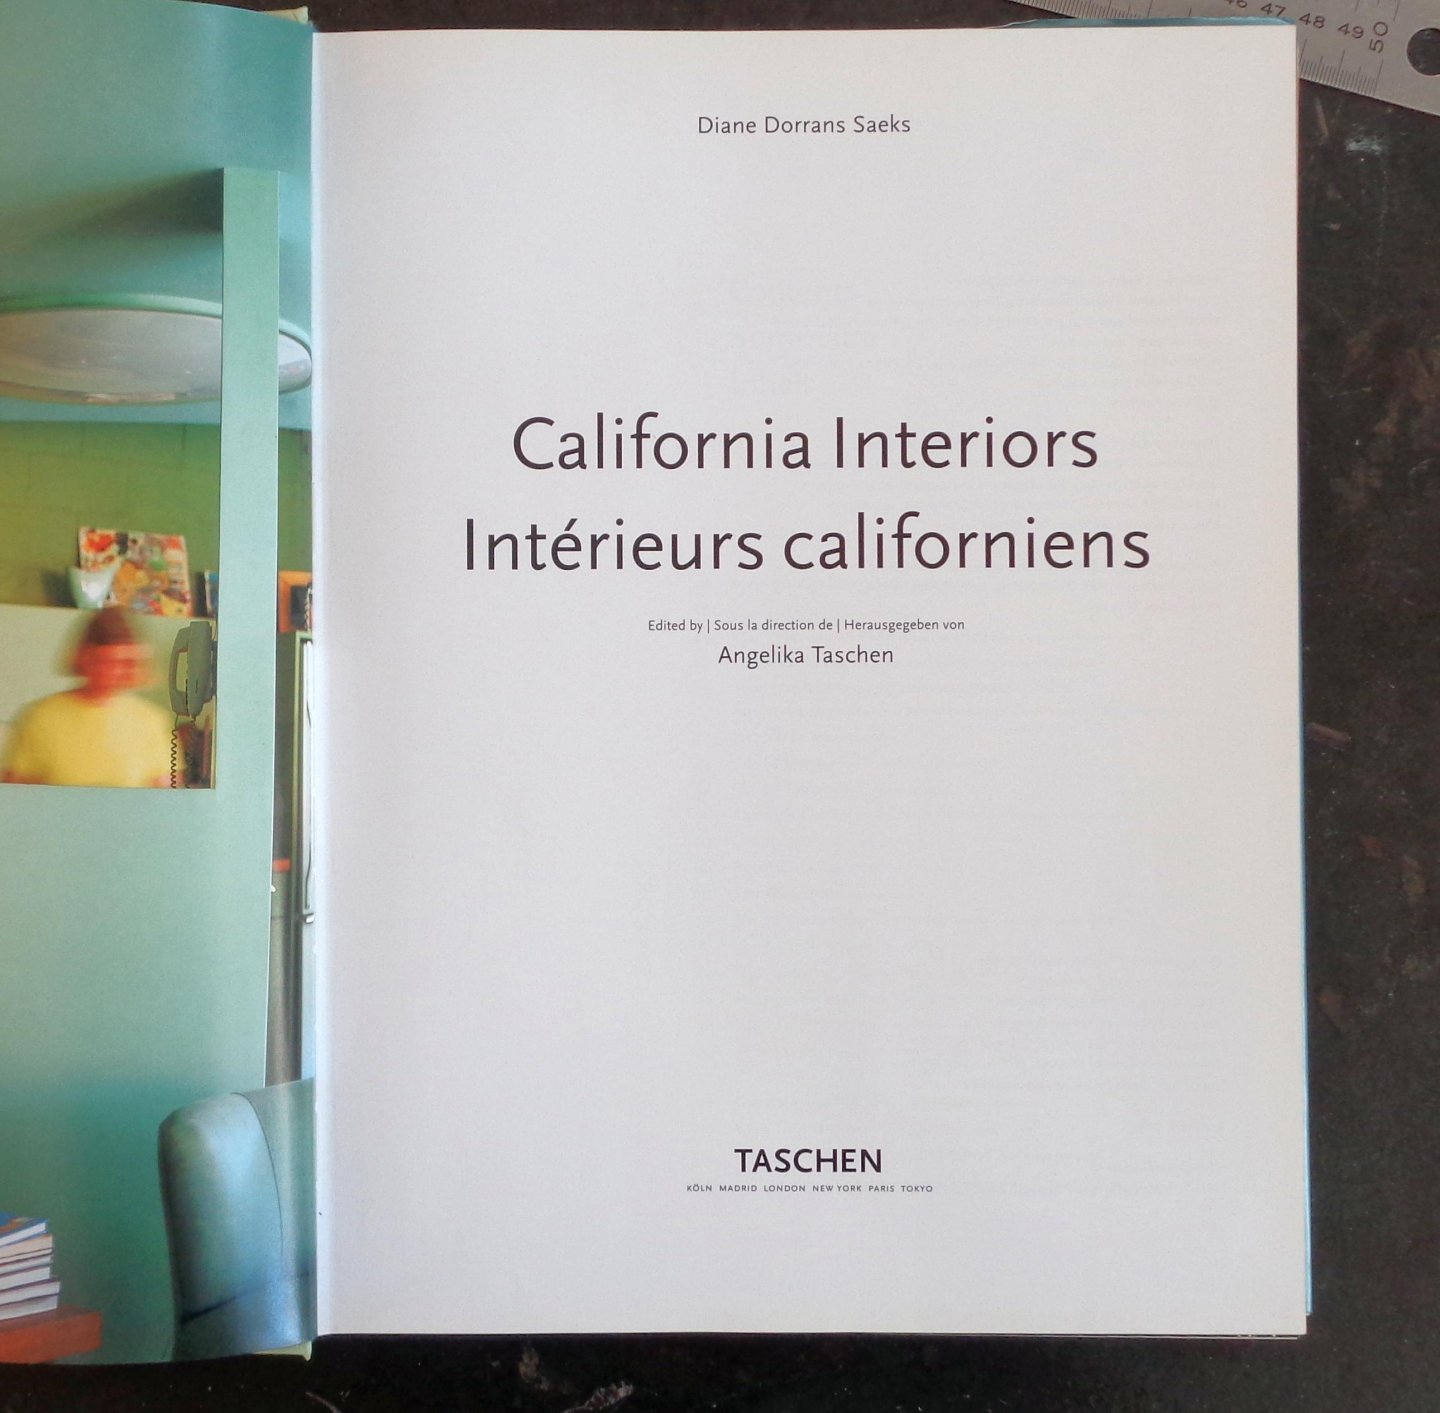 Saeks, D.D. - California Interiors. Intérieurs californiens